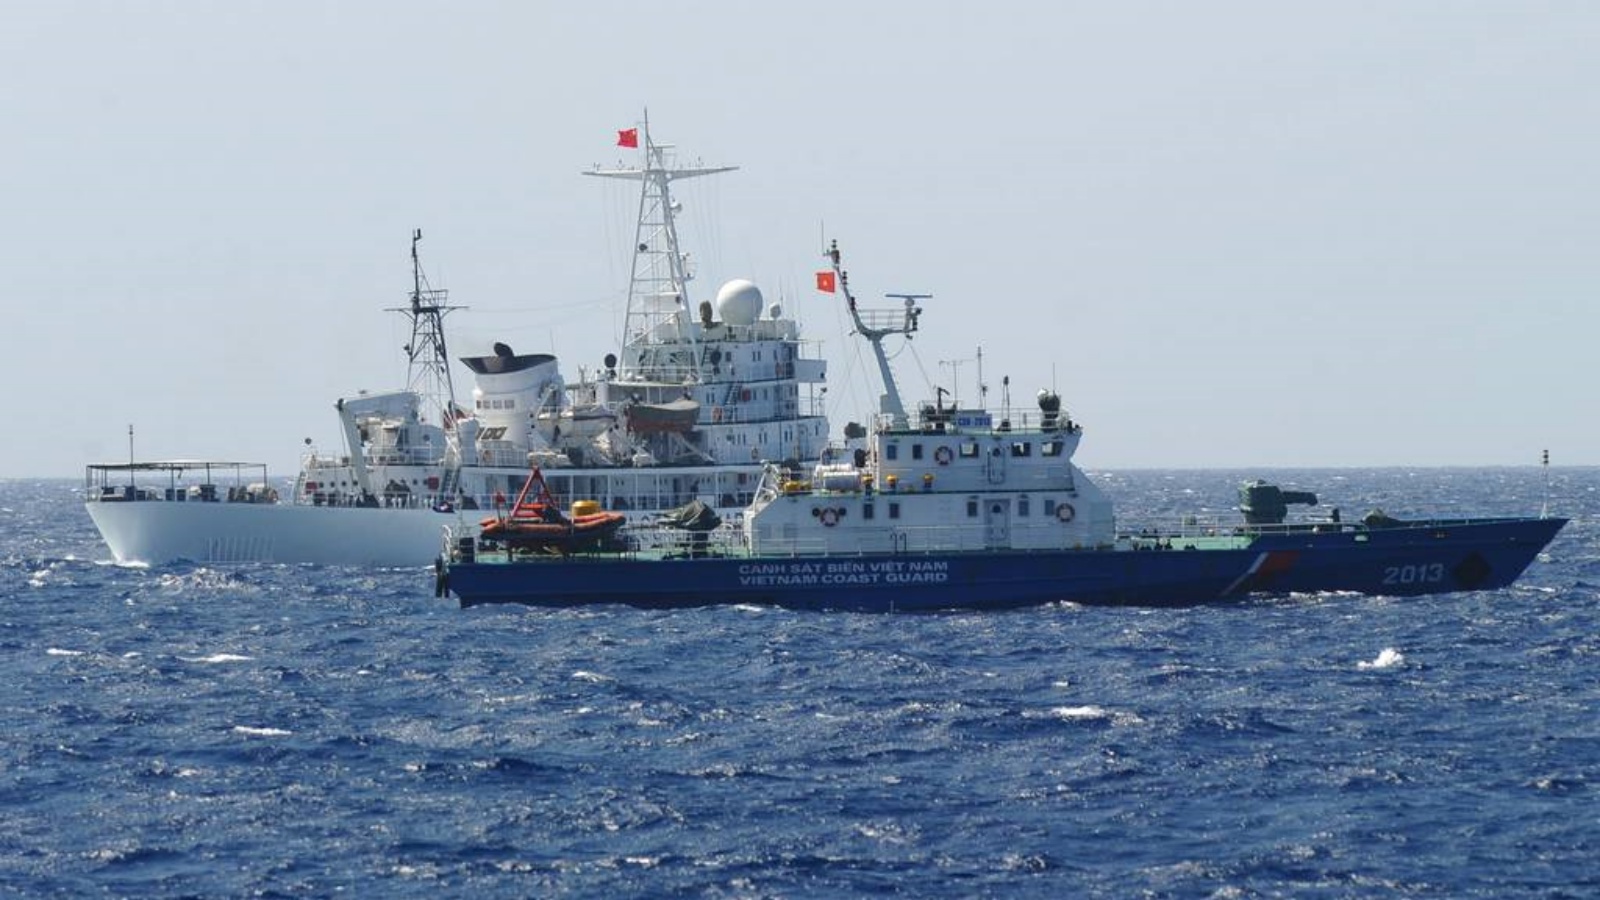 سفينة حرس السواحل الصينية (للخلف) تبحر بجوار سفينة حرس السواحل الفيتنامية (الأمامية) بالقرب من منصة حفر النفط الصينية في المياه المتنازع عليها في بحر الصين الجنوبي (أرشيفية)